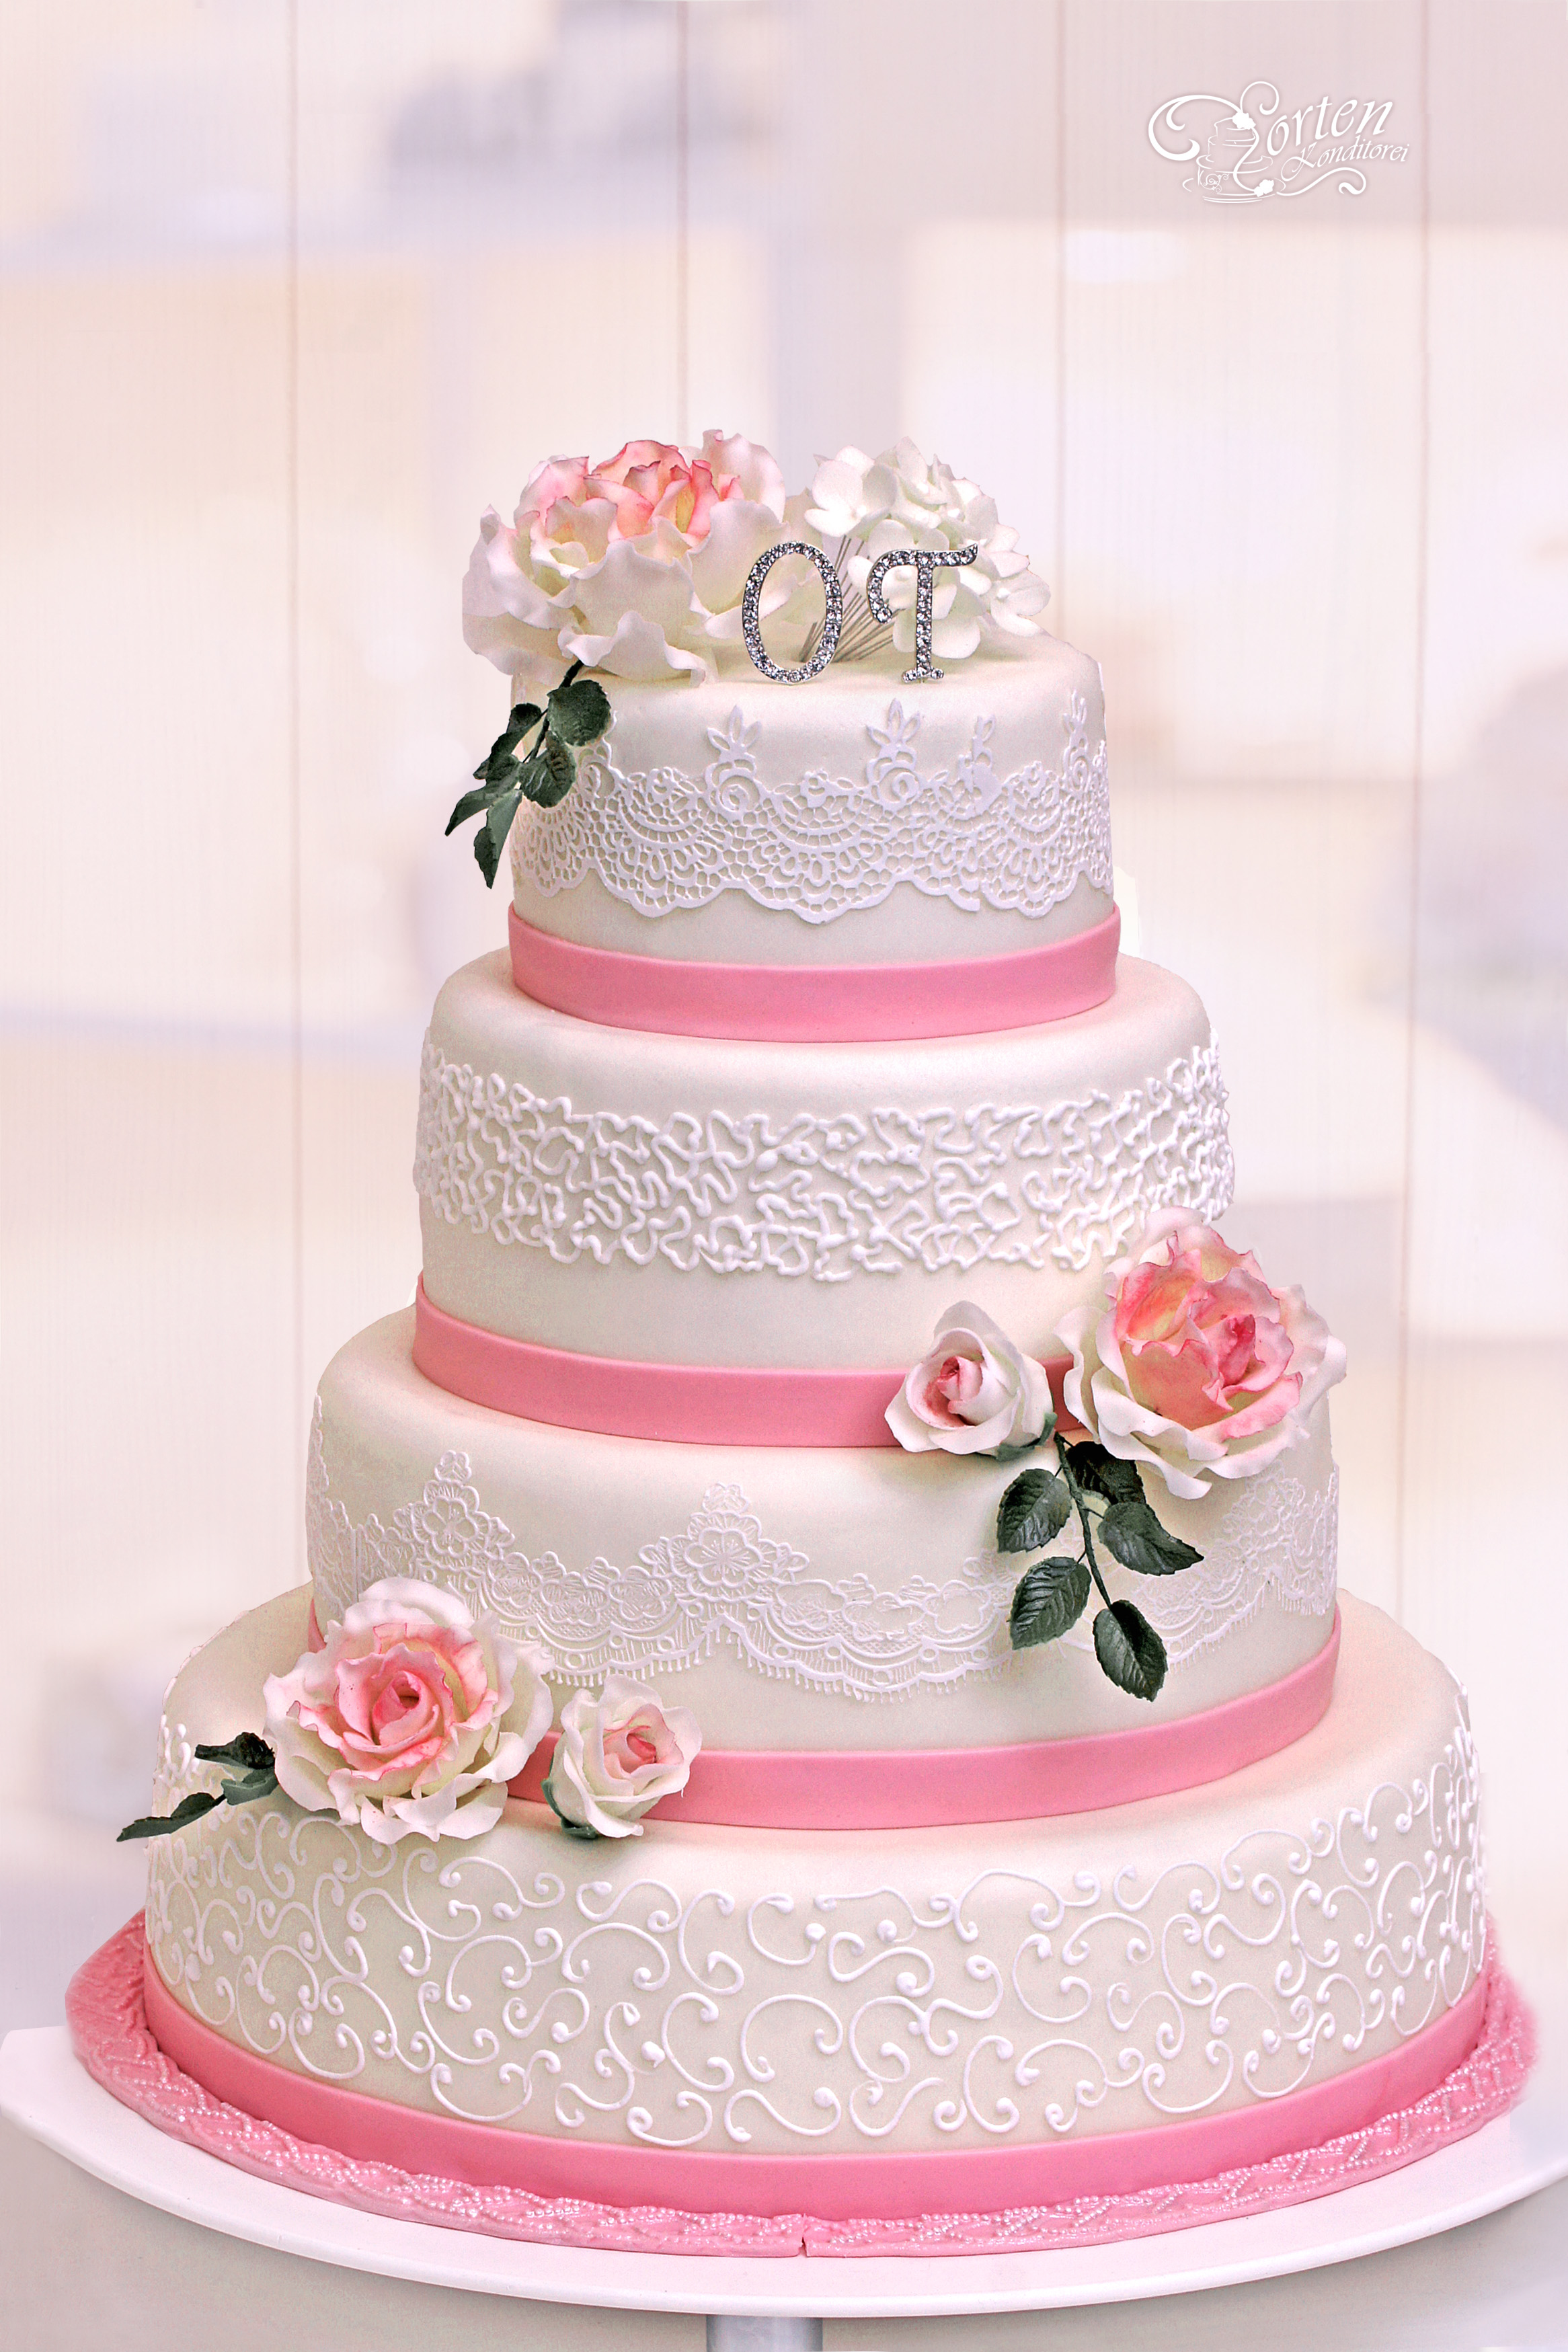 Hochzeitstorte mit Teerosen, Spitze und Schnörkeln in rosa-weiß und etwas grün.